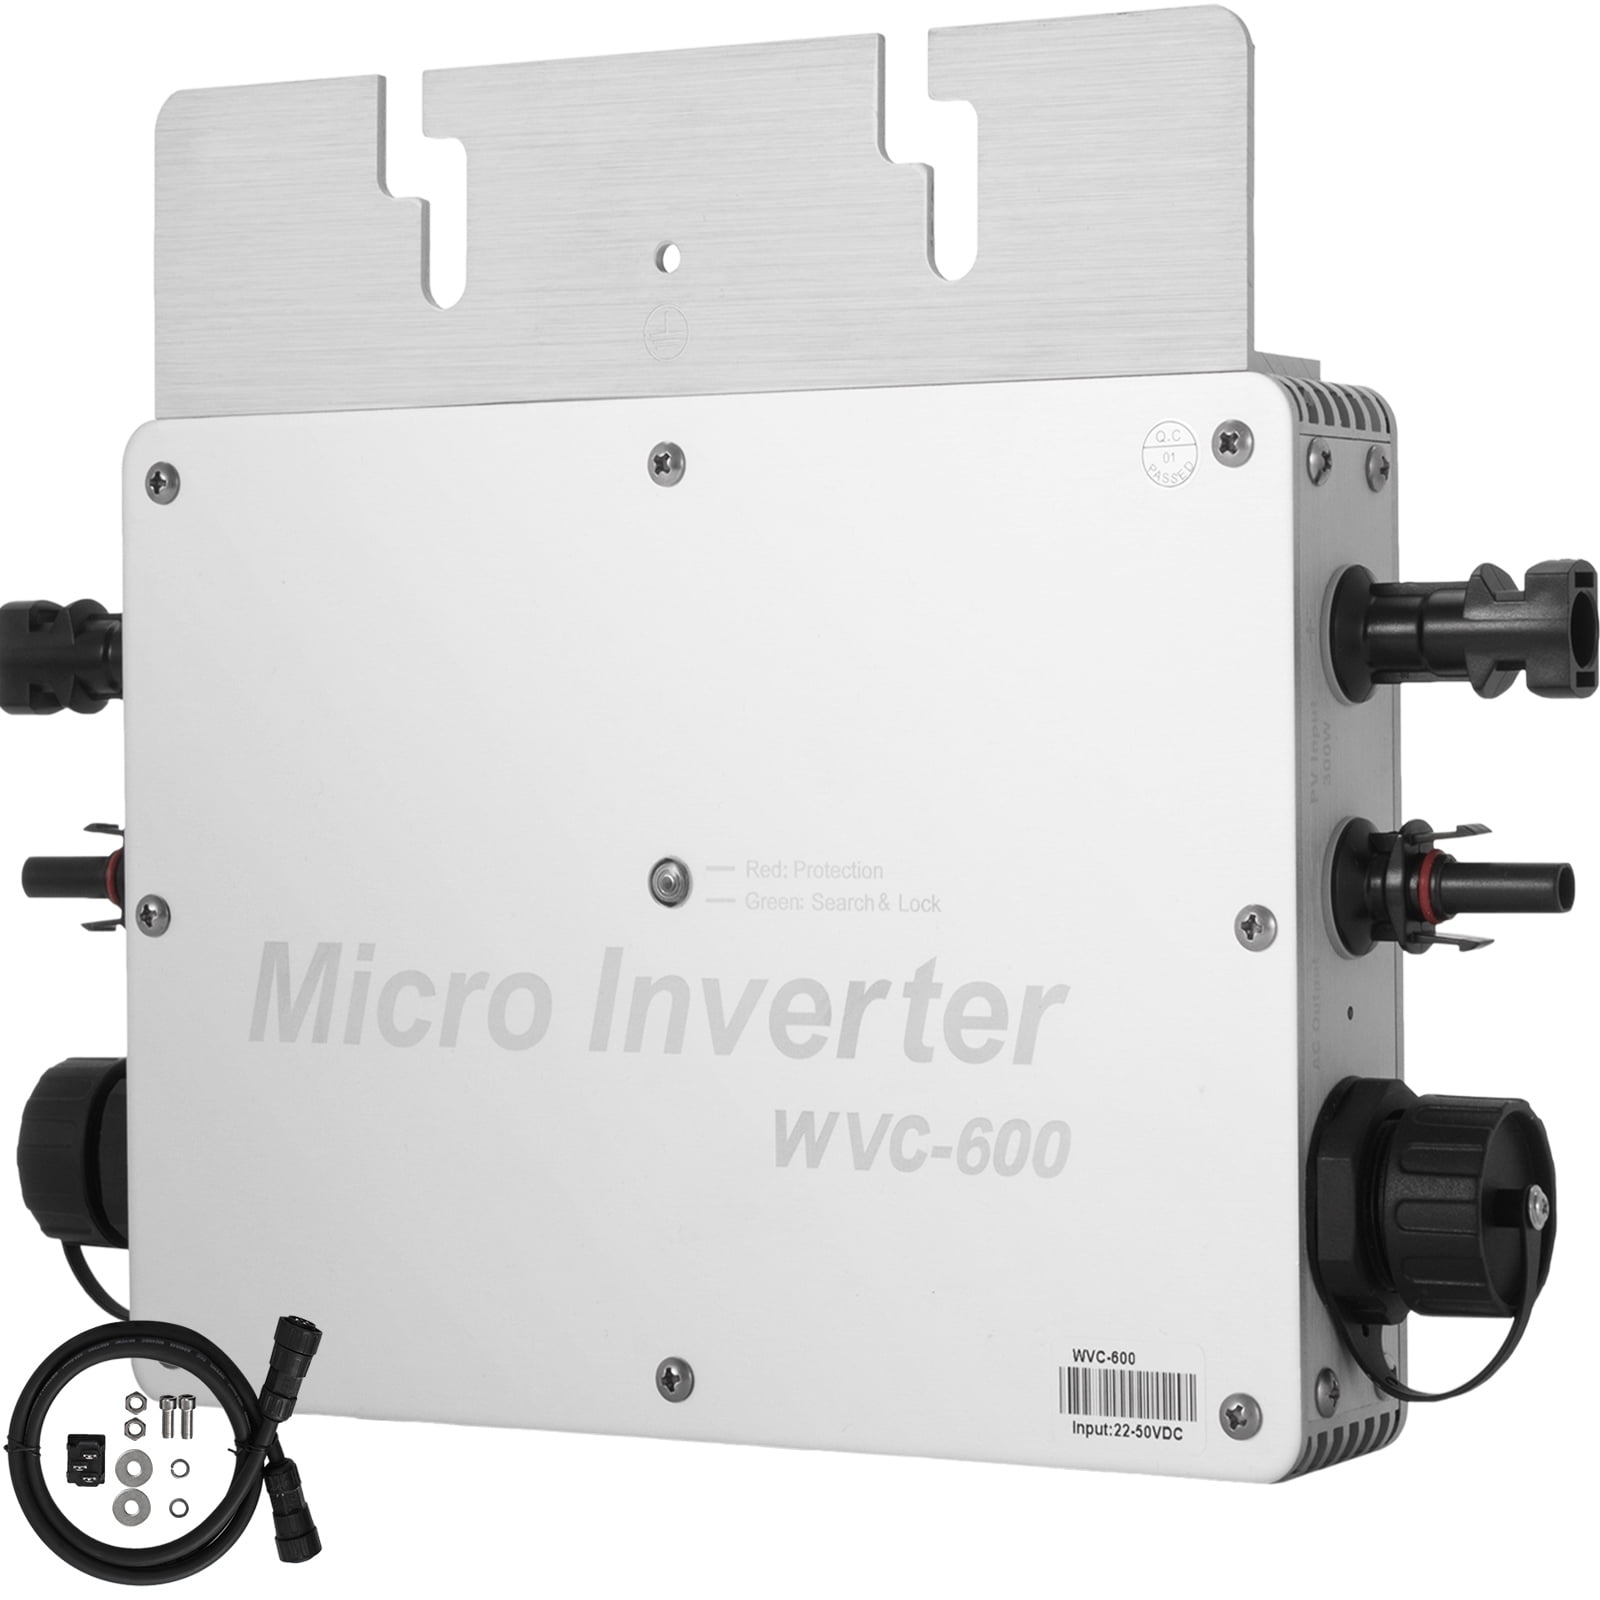 600W Grid Tie Inverter DC11-32V for 12V PV Panel/24V Battery Solar Microinverter 